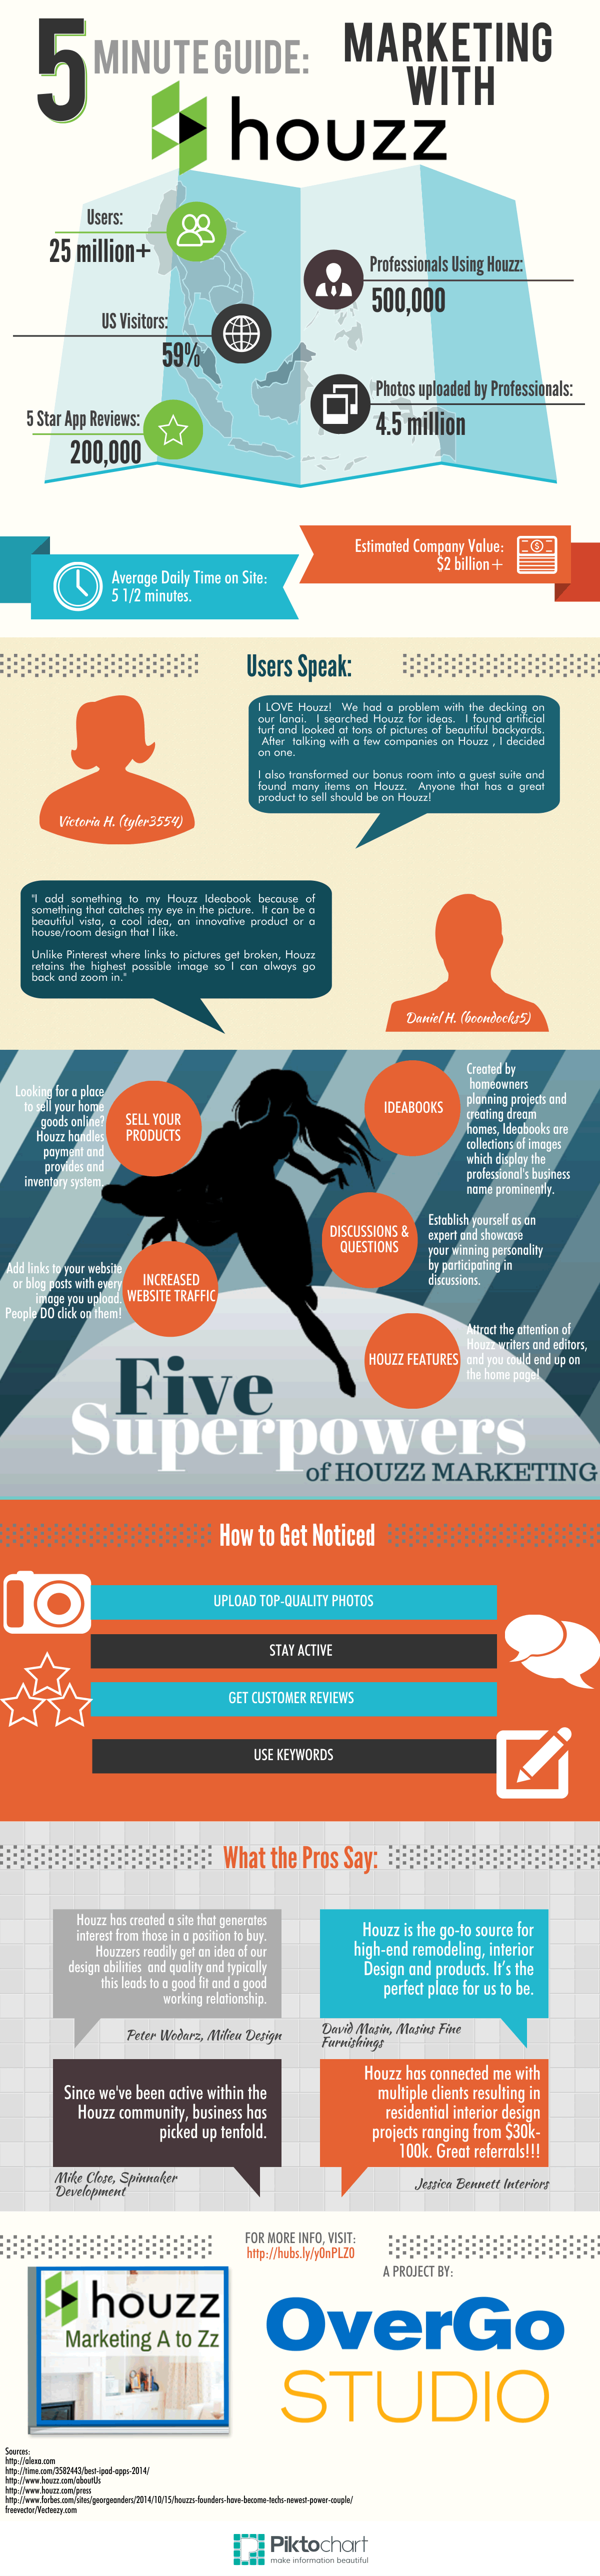 5-Minute Guide to Houzz Marketing http://www.overgovideo.com/blog/houzz-marketing-professionals via @overgostudio